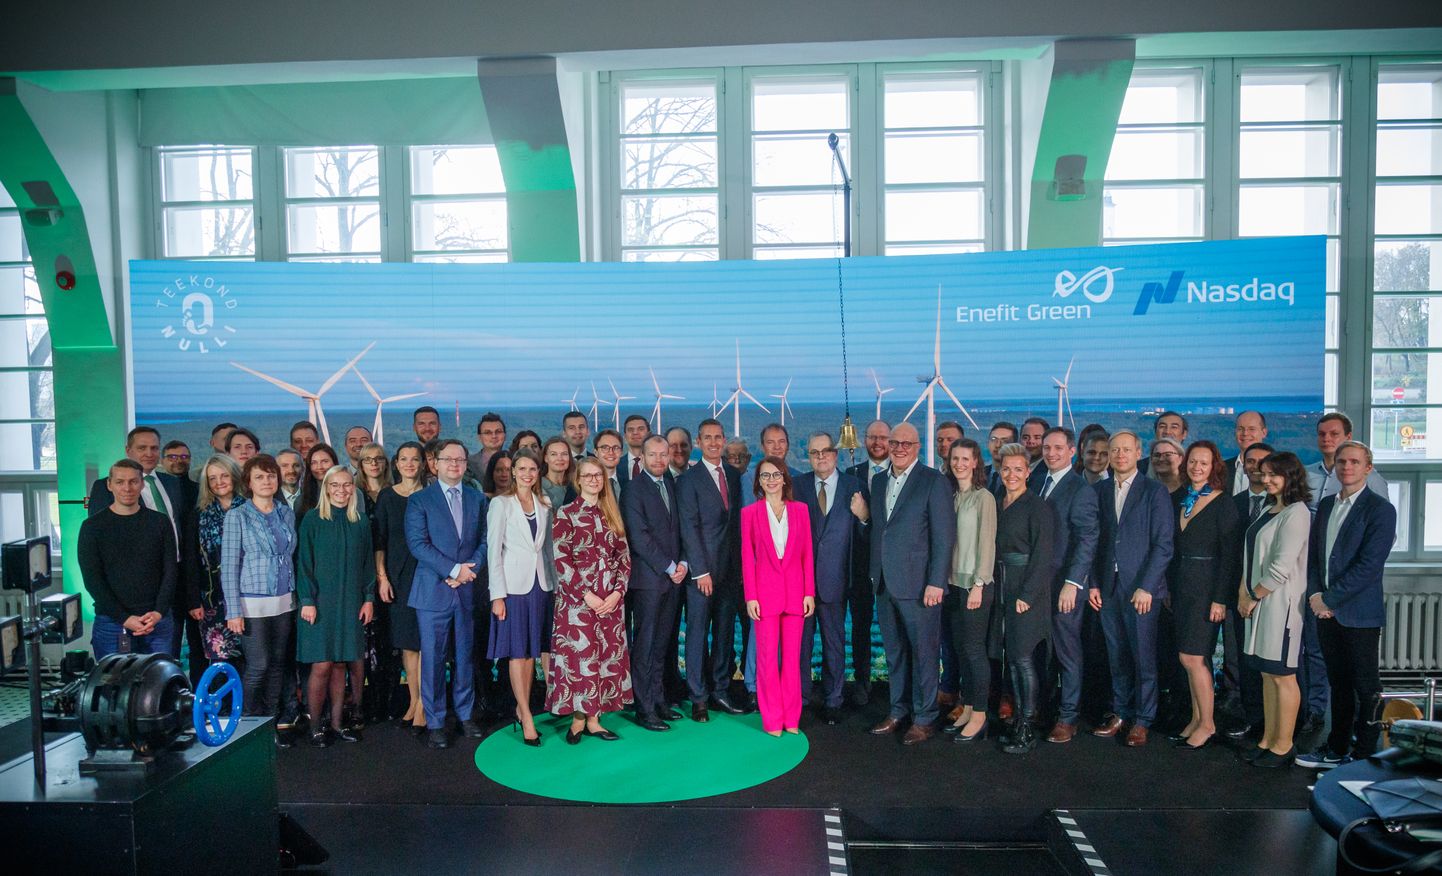 21.10.2021, Tallinn
Enefit Green aktsia esimese kauplemispäeva tähistamine Energia Avastuskeskuses.
Foto Mihkel Maripuu, Postimees